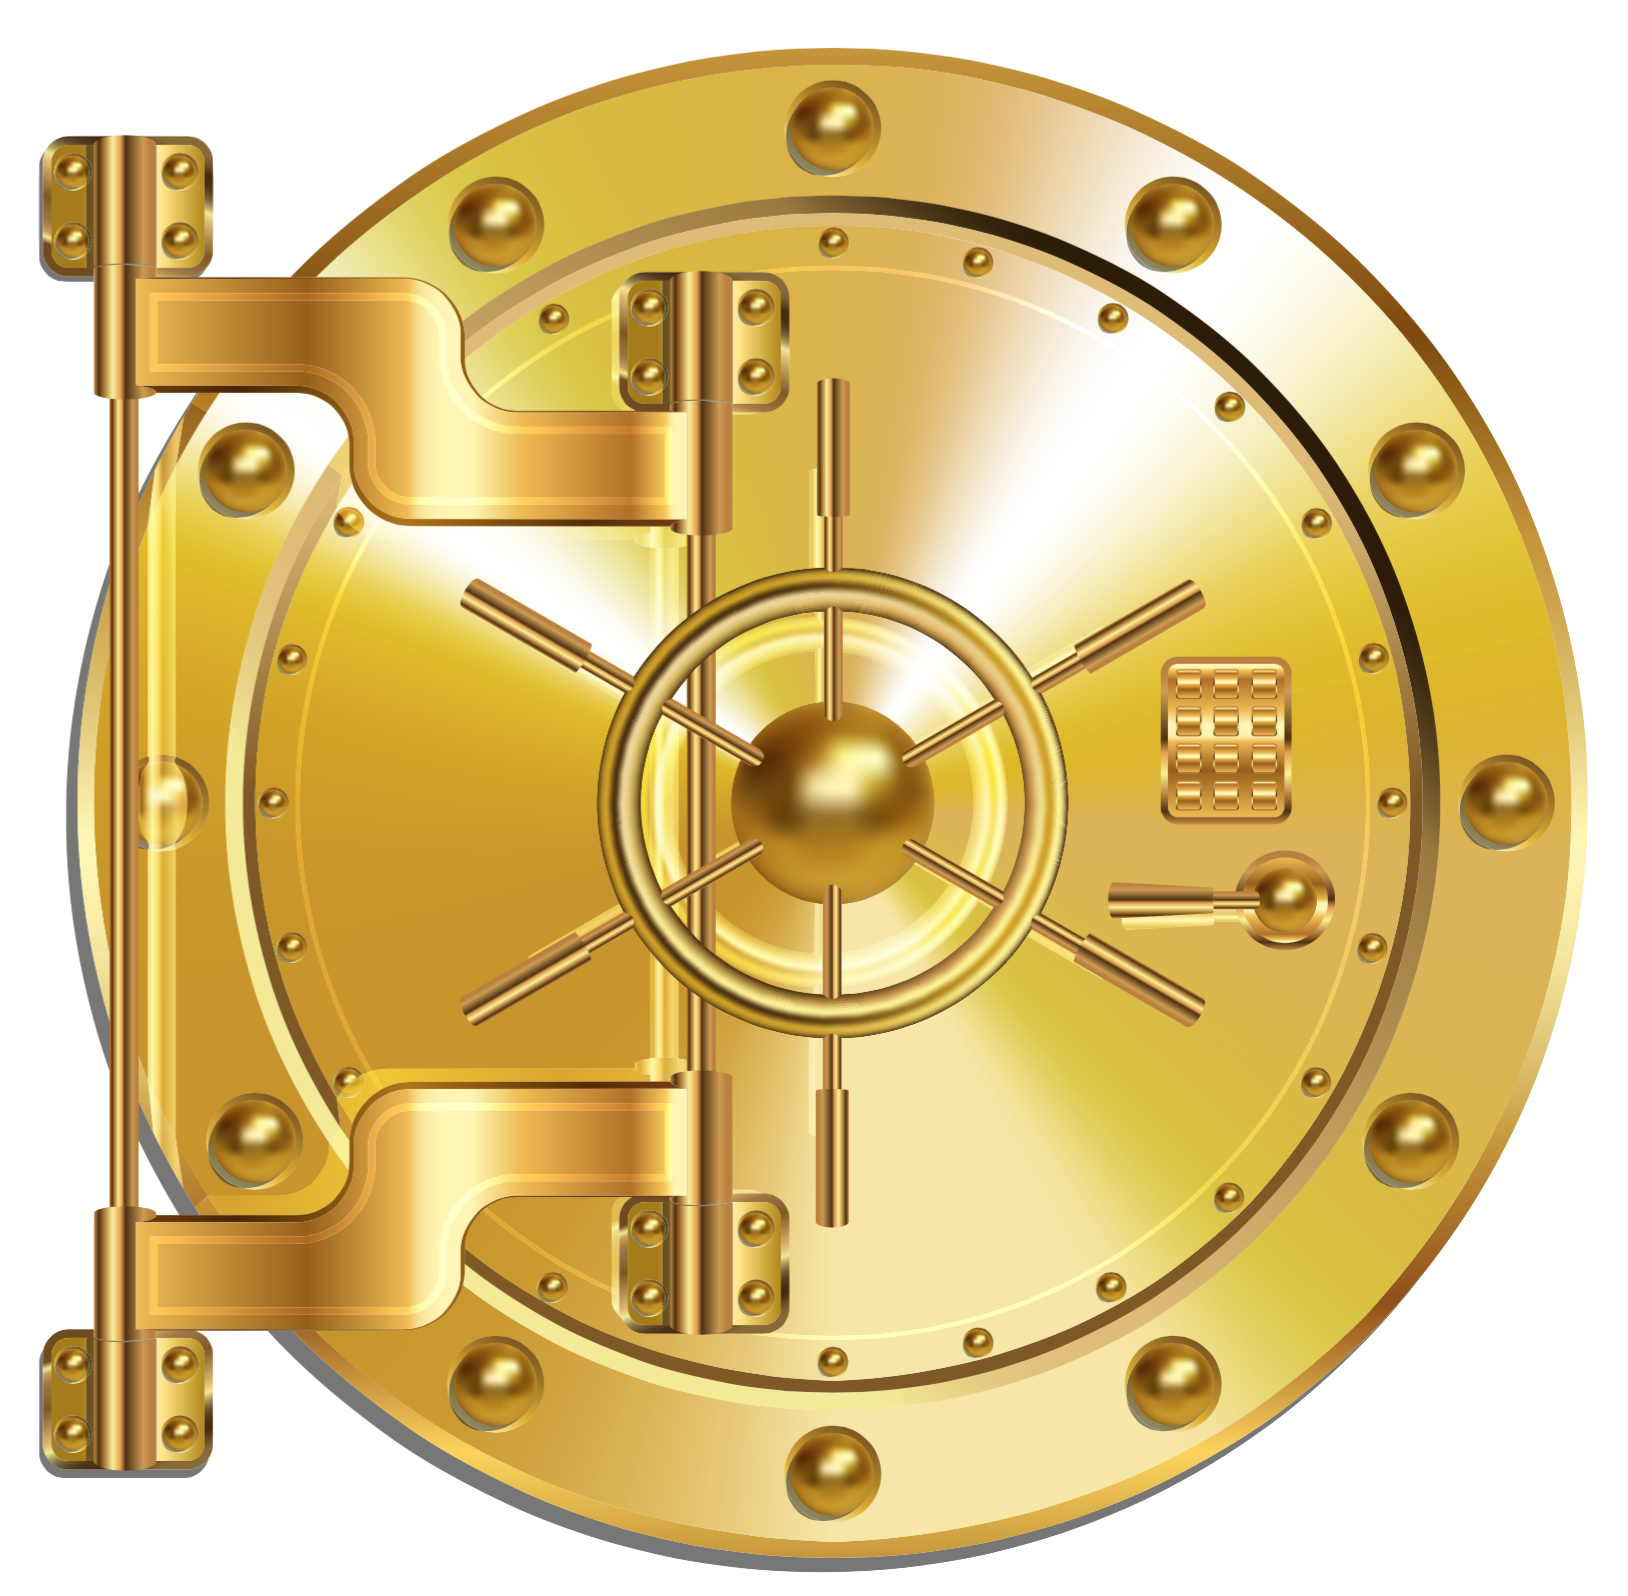 Image of golden safe door